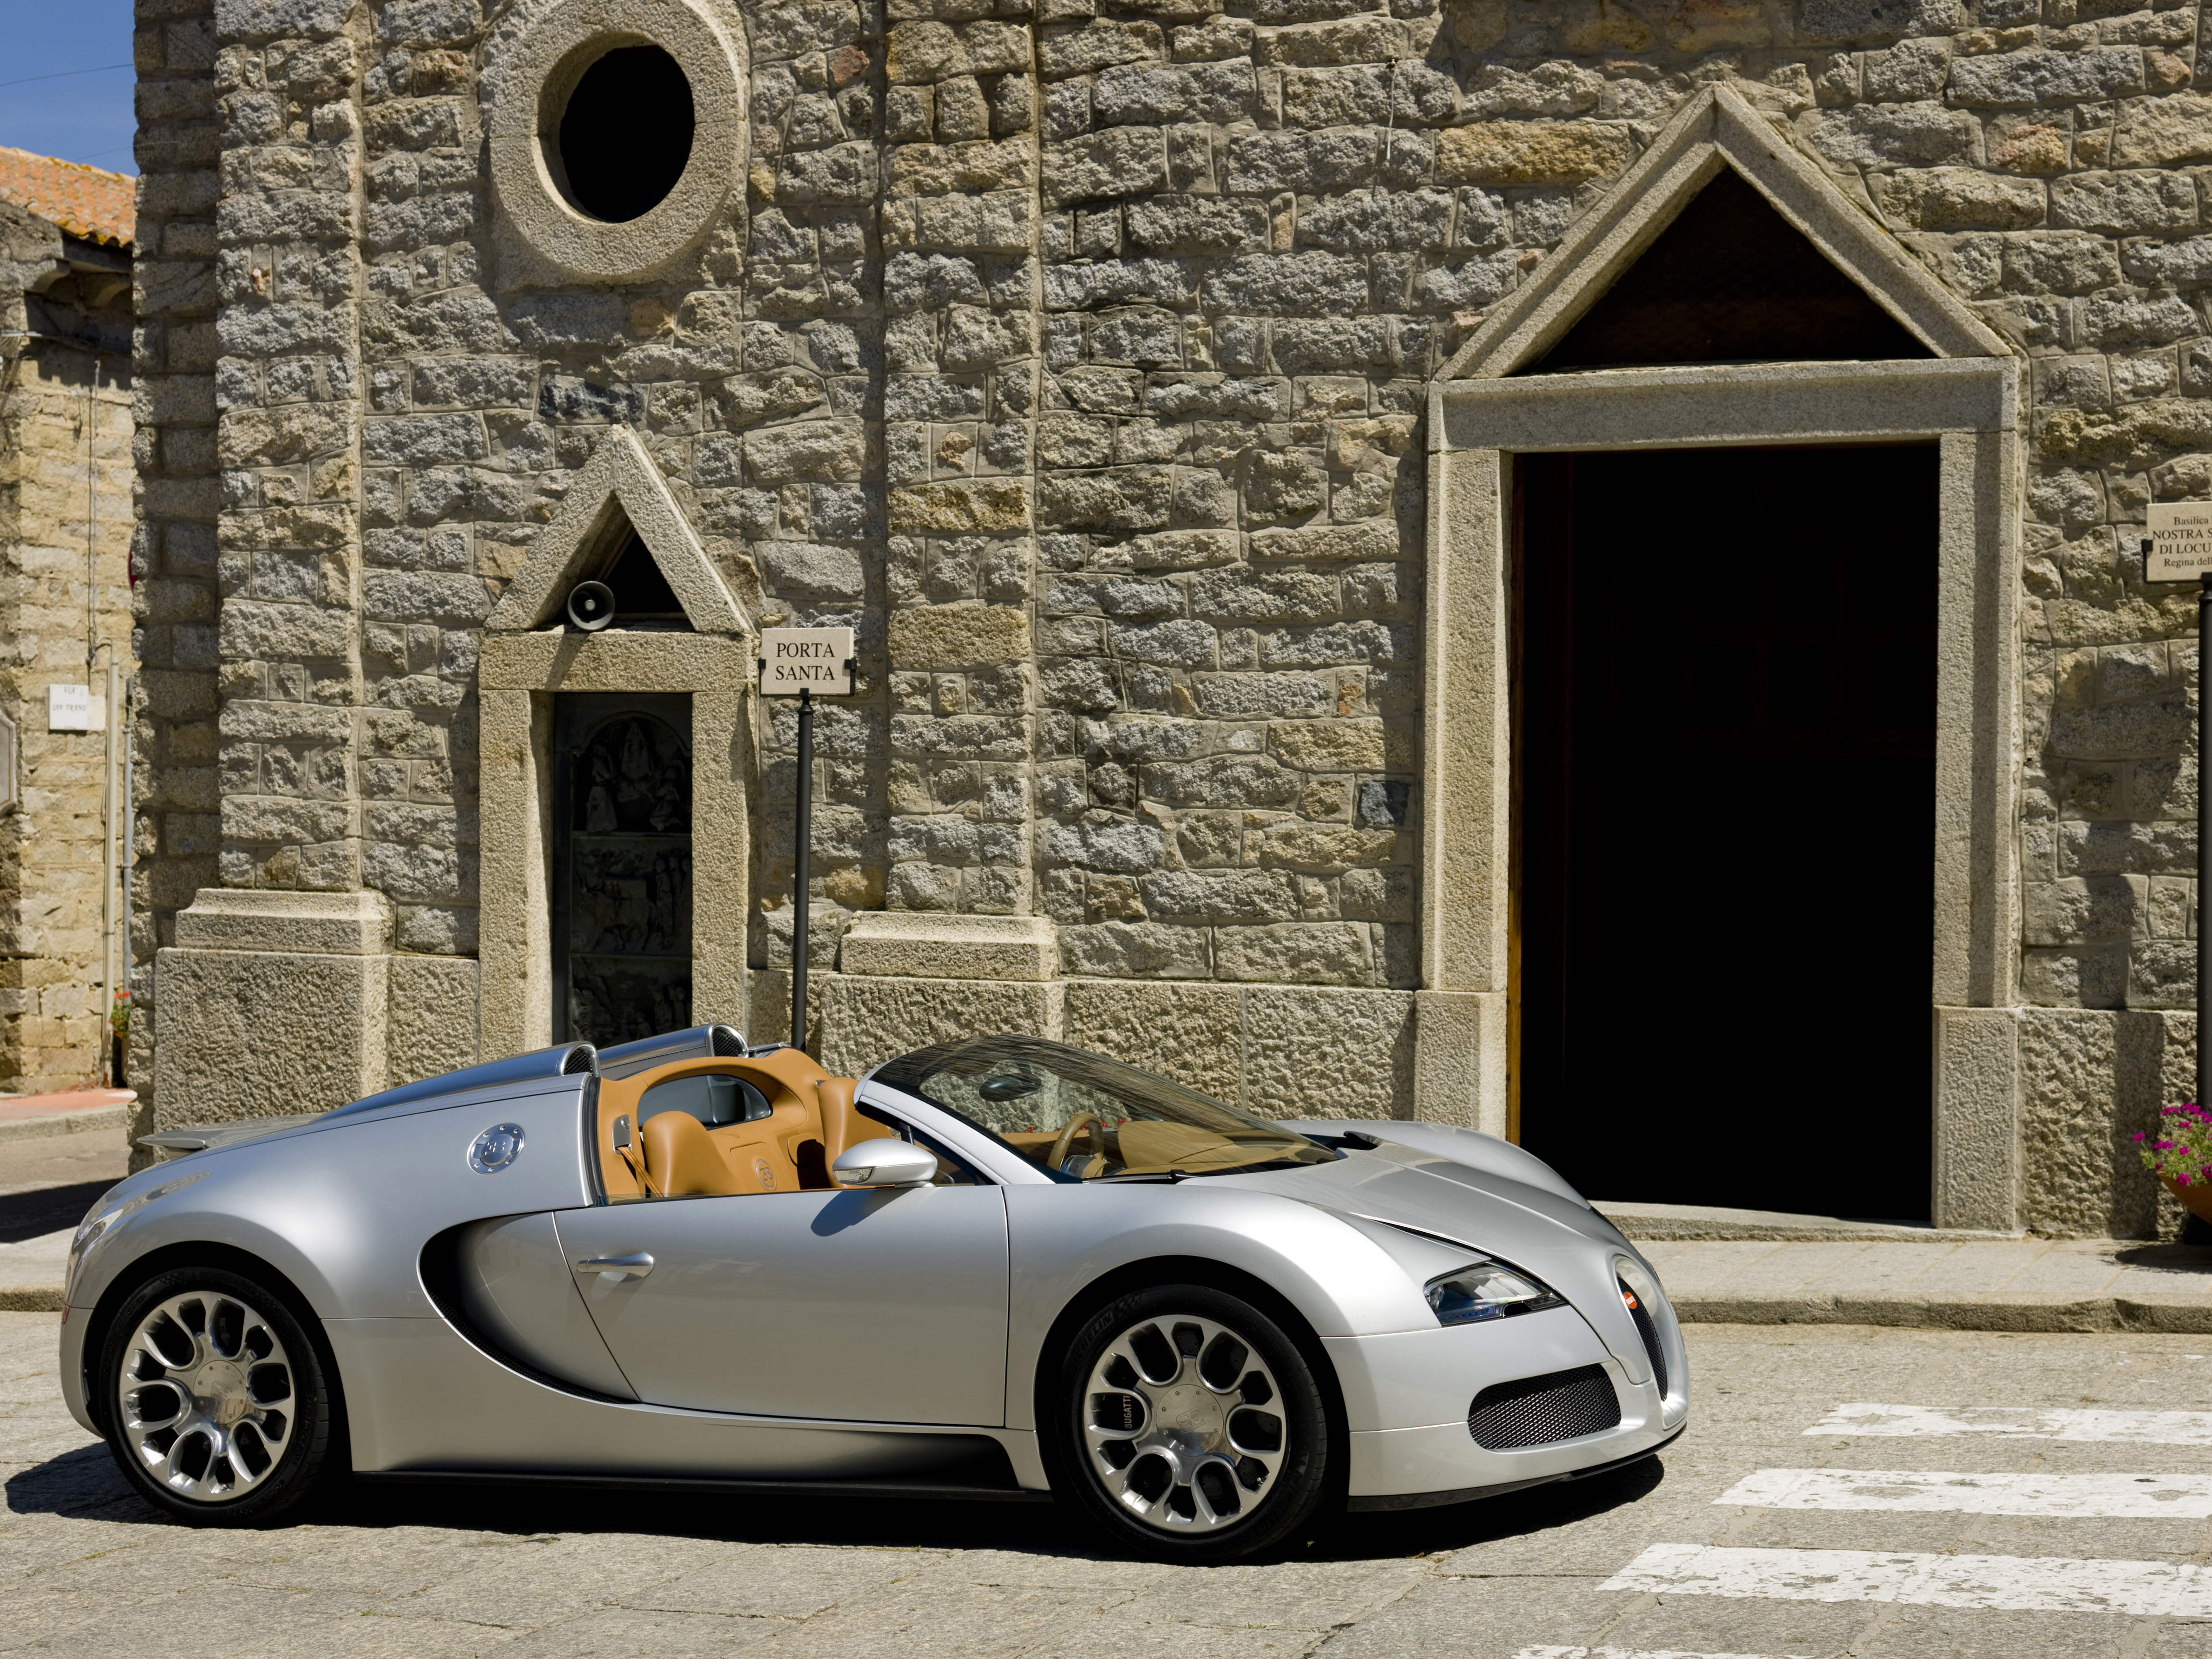 Descarga gratuita de fondo de pantalla para móvil de Bugatti, Coche, Superdeportivo, Bugatti Veyron, Vehículos, Coche De Plata.